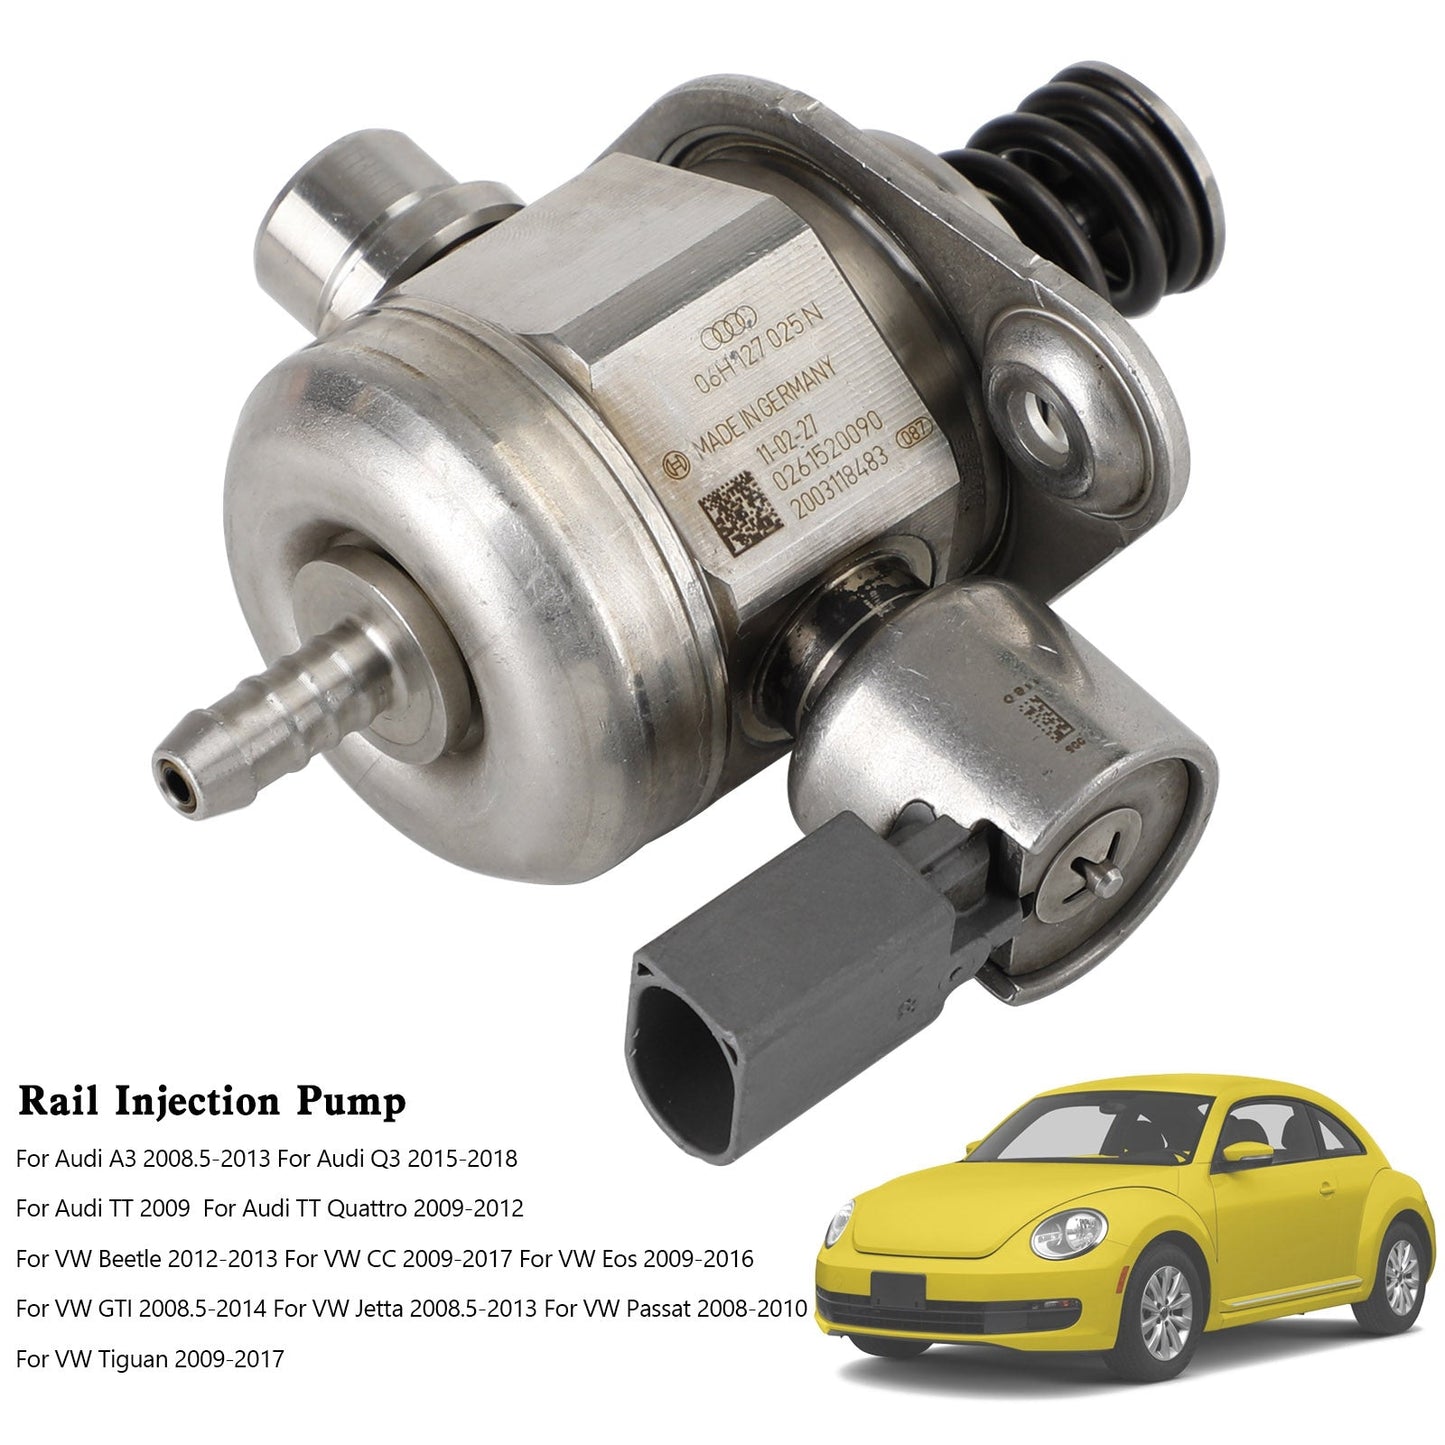 VW Beetle 2012-2013 / VW Eos 2009-2016 High Pressure Fuel Pump 06H127025N